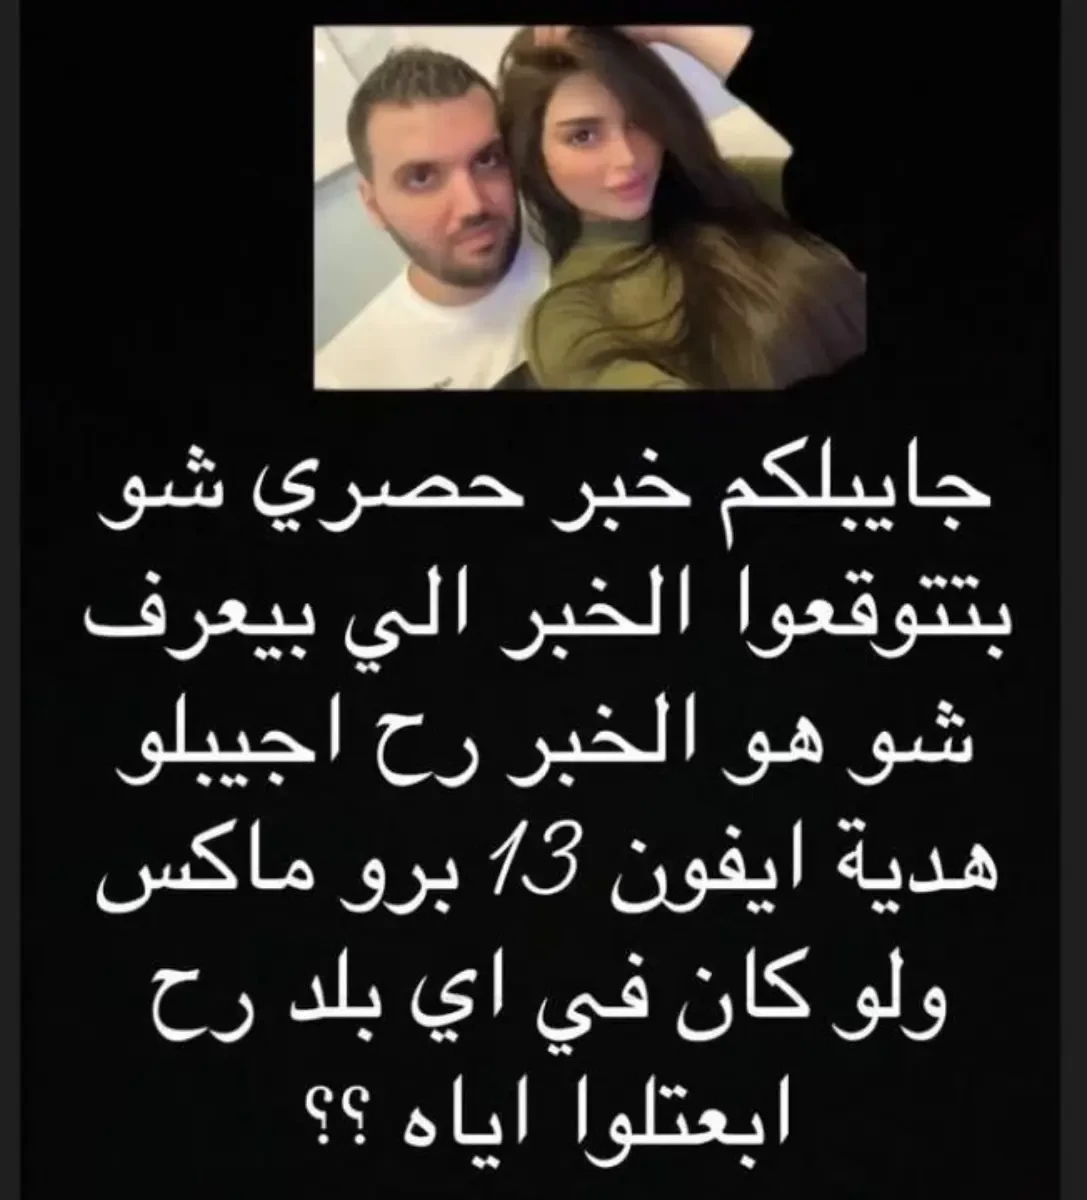 بالفيديو: طلاق تامر حسني وبسمة بوسيل قبل 3 أيام